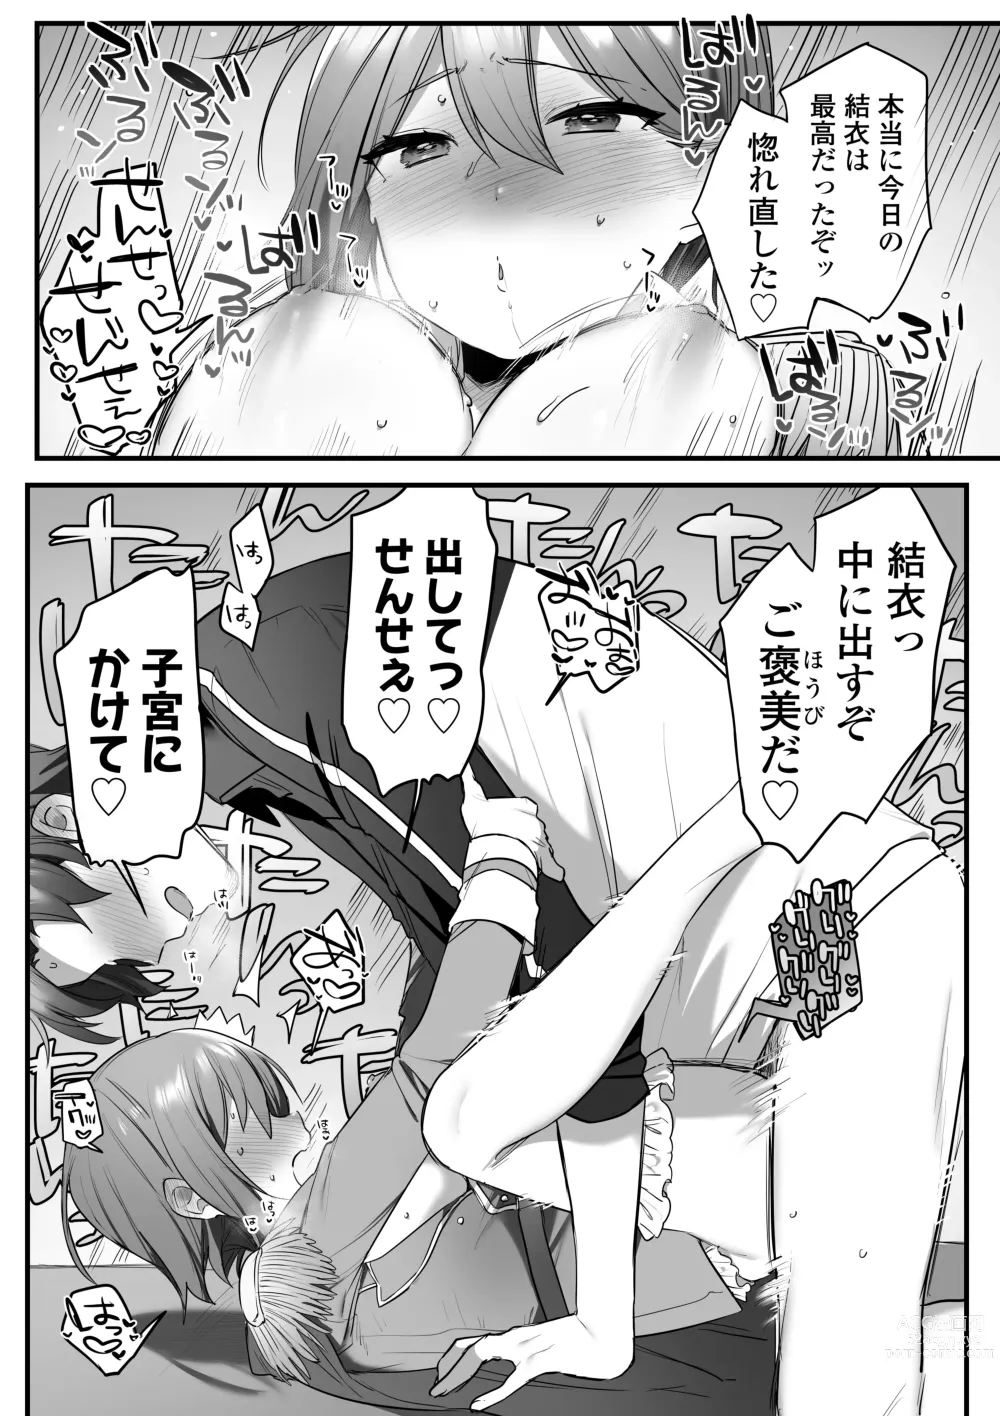 Page 89 of doujinshi Engekibu no Ouji-sama